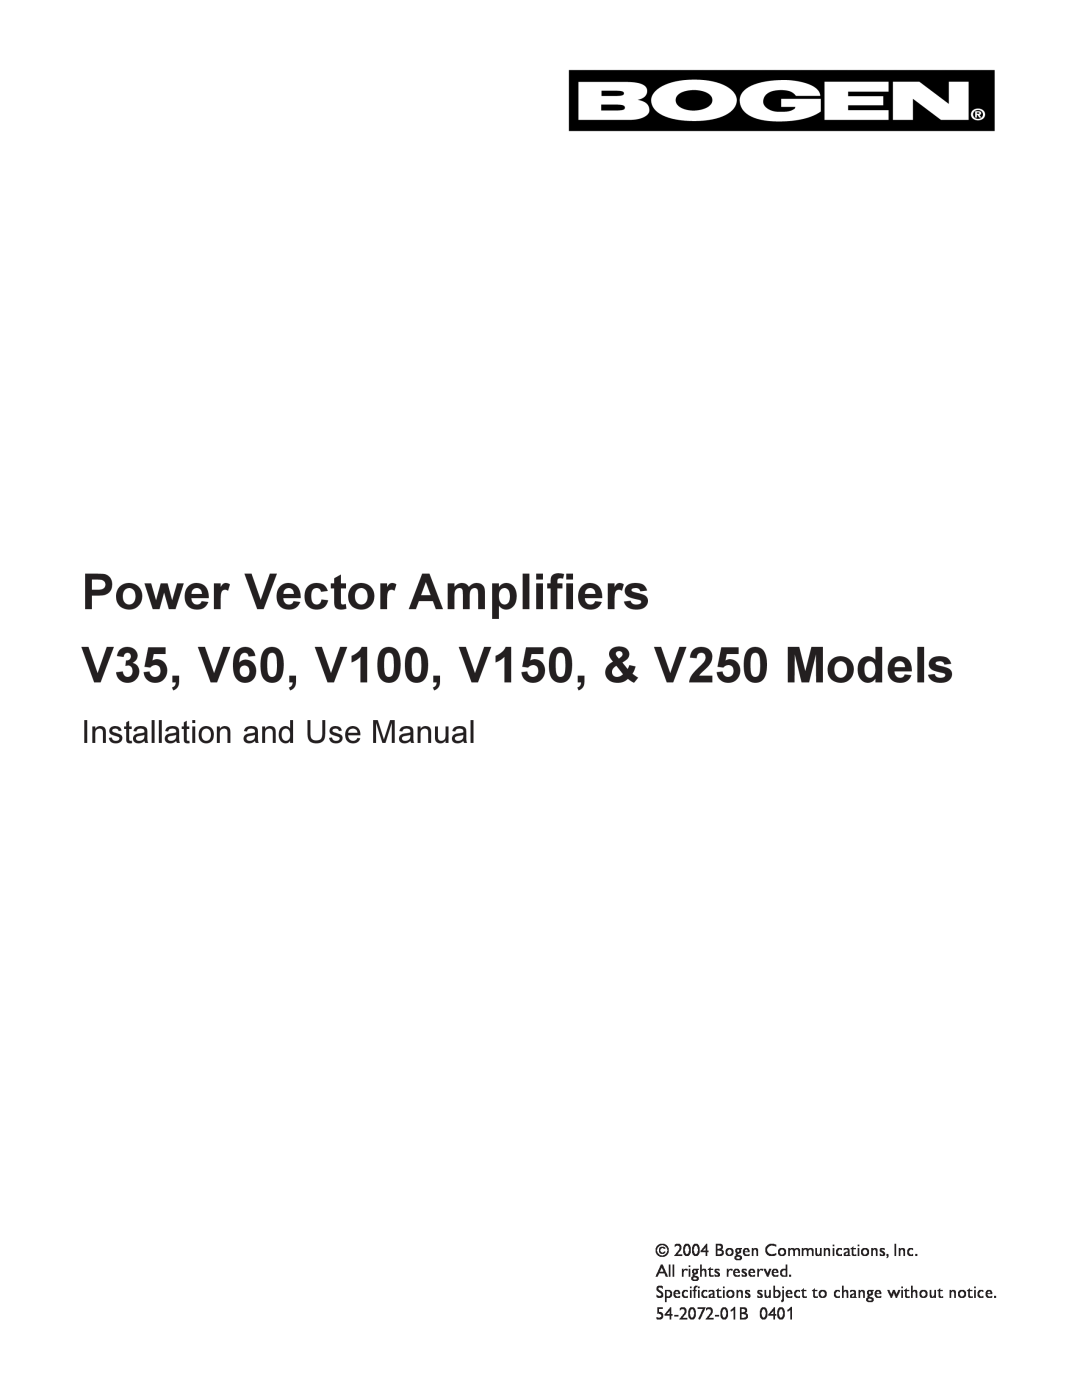 Bogen specifications Power Vector Amplifiers, V35, V60, V100, V150, & V250 Models, Installation and Use Manual 